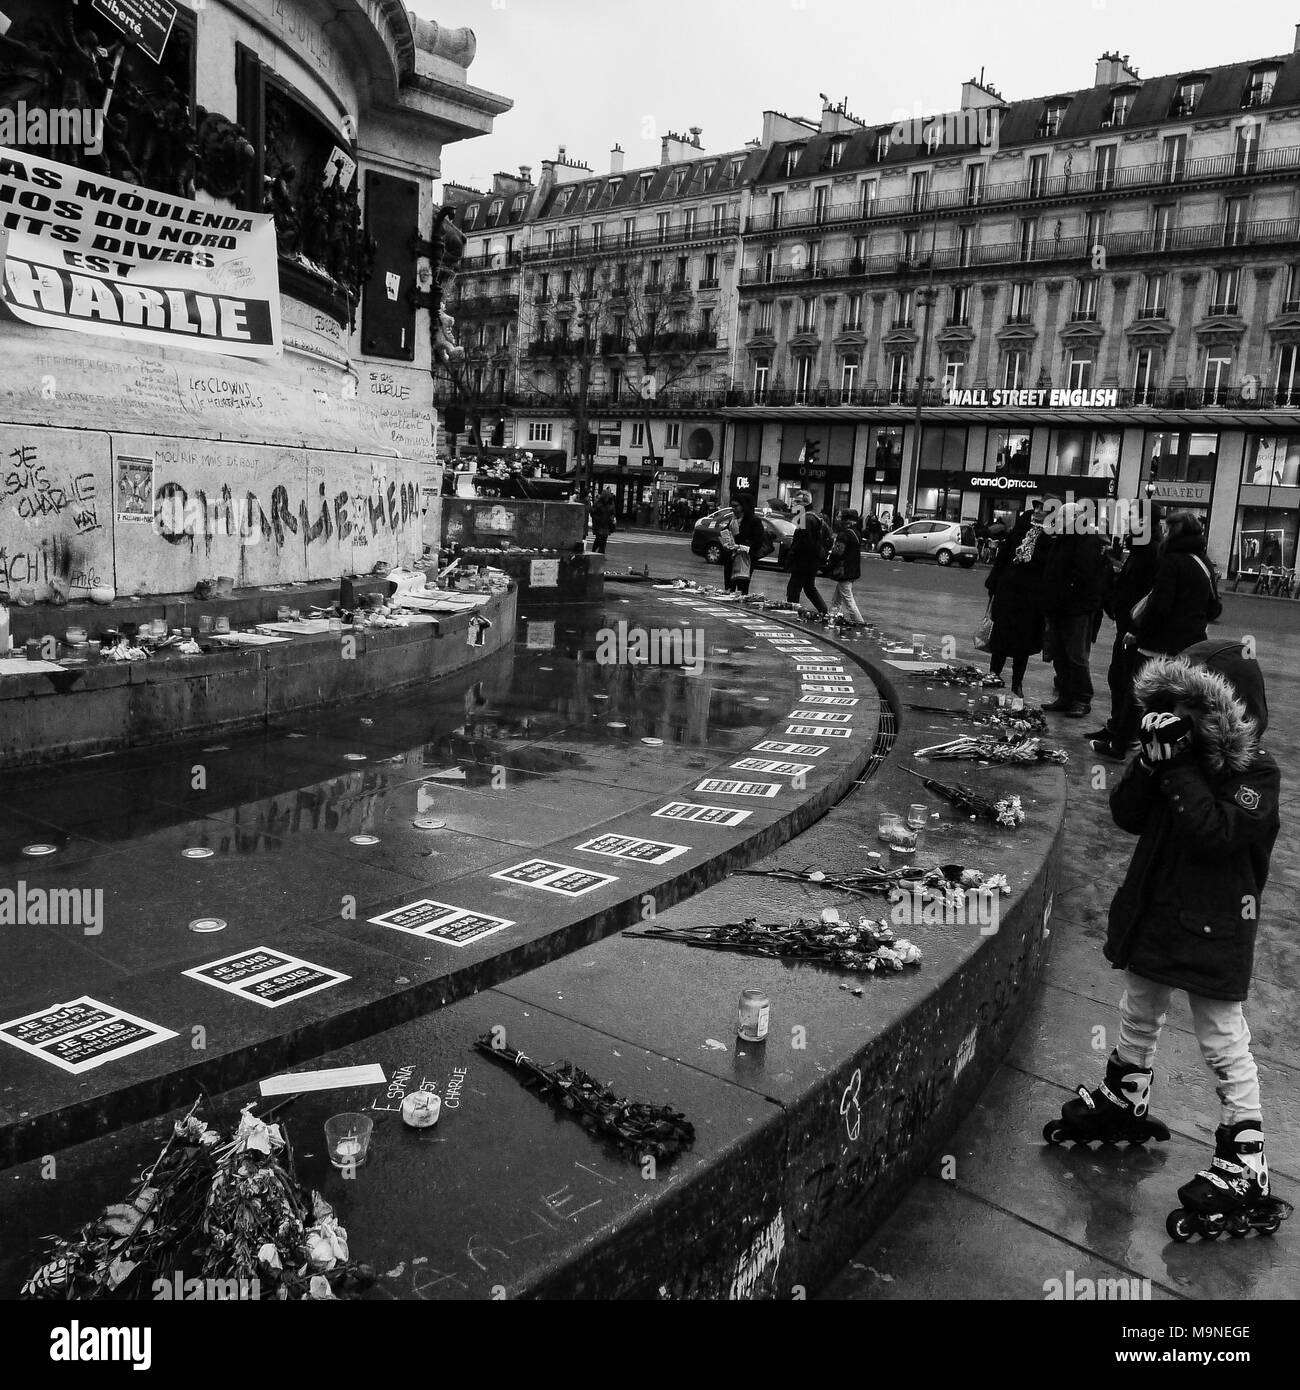 Postumi di Charlie attacchi terroristici: gente rende omaggio alle vittime, Parigi, FranceRepublic square Foto Stock